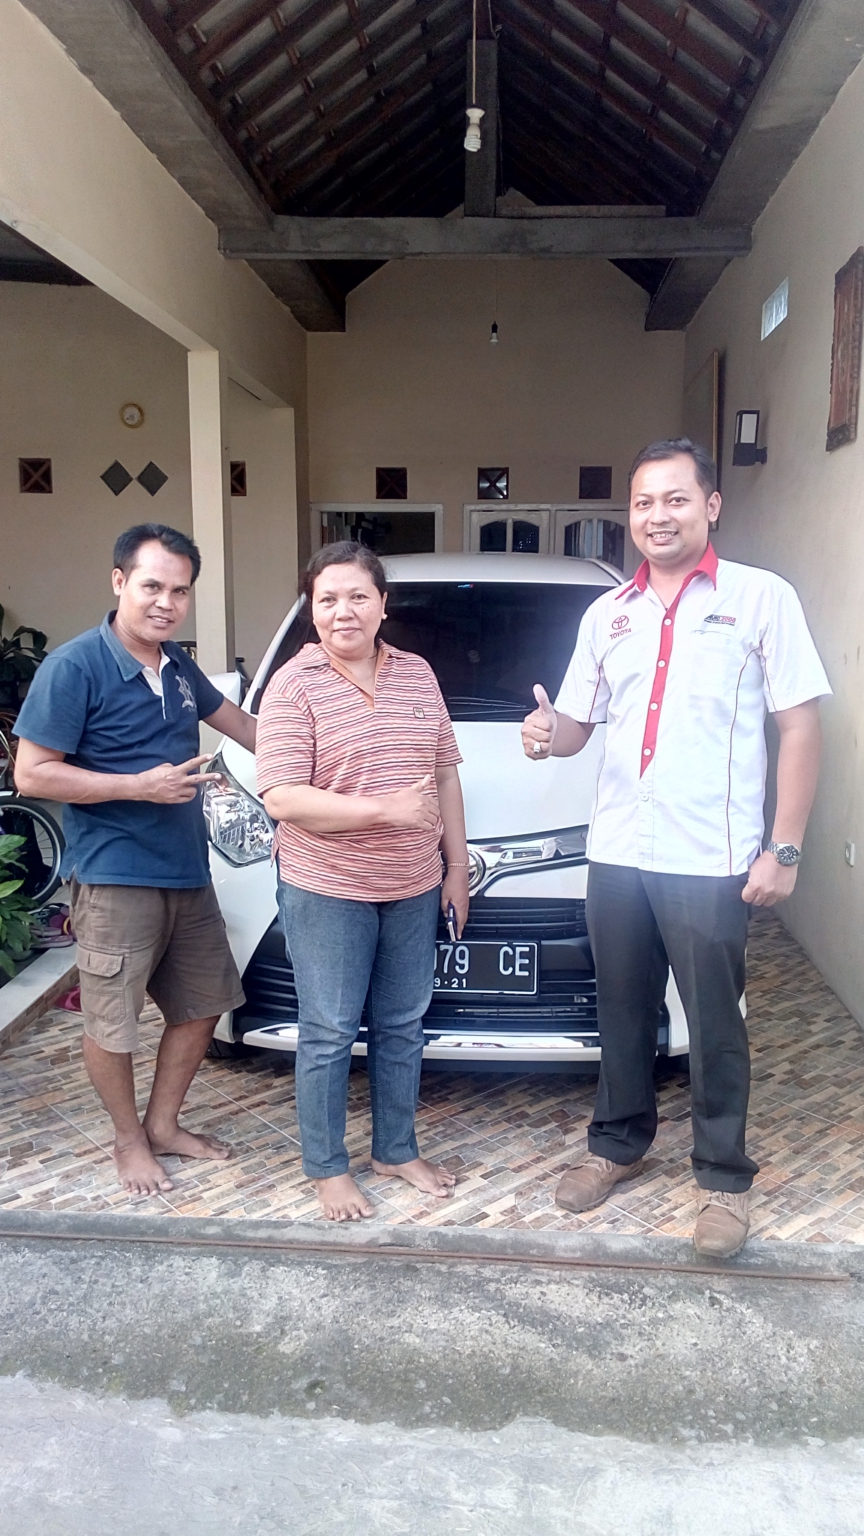 Harga Mobil Toyota Surabaya - TOYOTA SURABAYA, DEALER TOYOTA SURABAYA